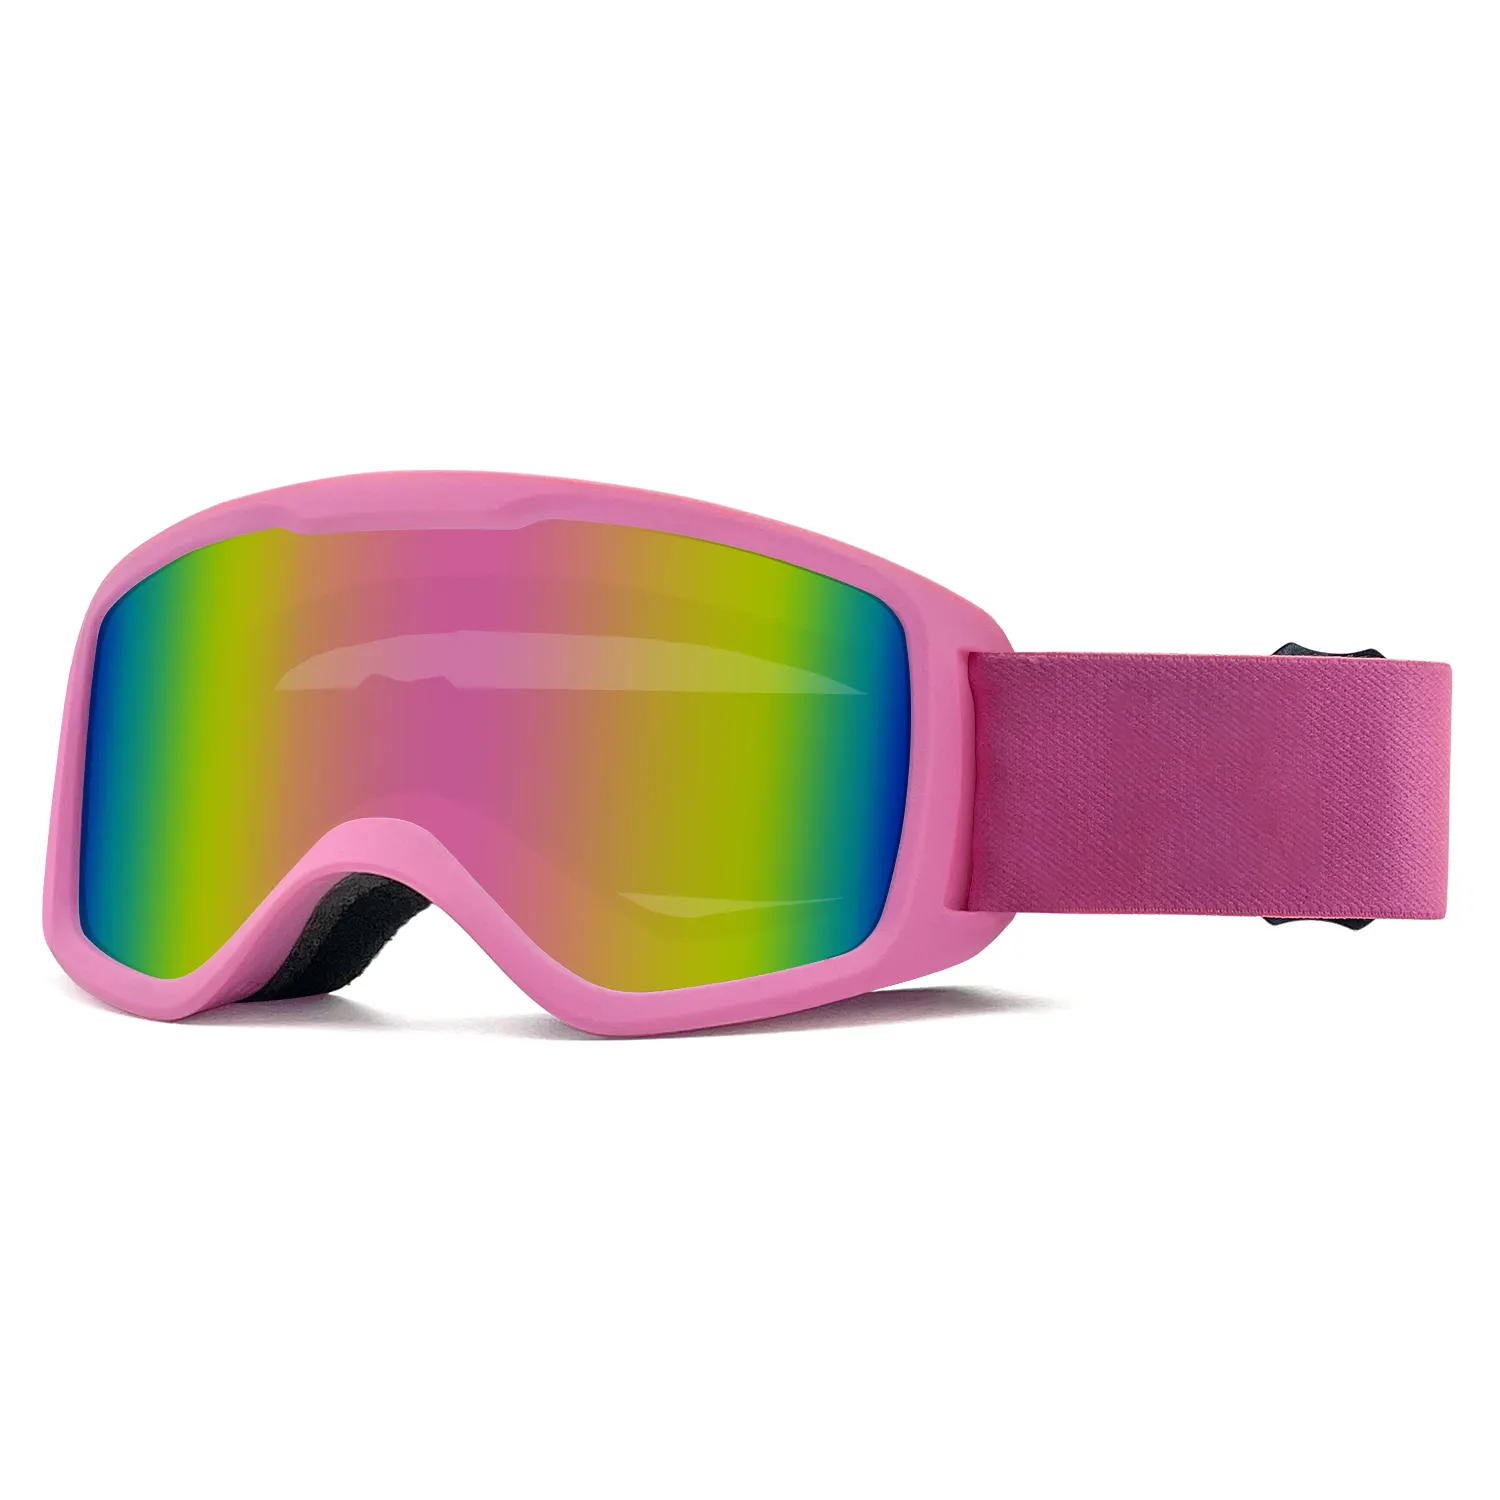 Óculos de proteção esportiva para crianças, óculos de proteção anti-nevoeiro UV para neve, óculos de segurança para crianças, óculos de proteção esportivos de alta qualidade para crianças